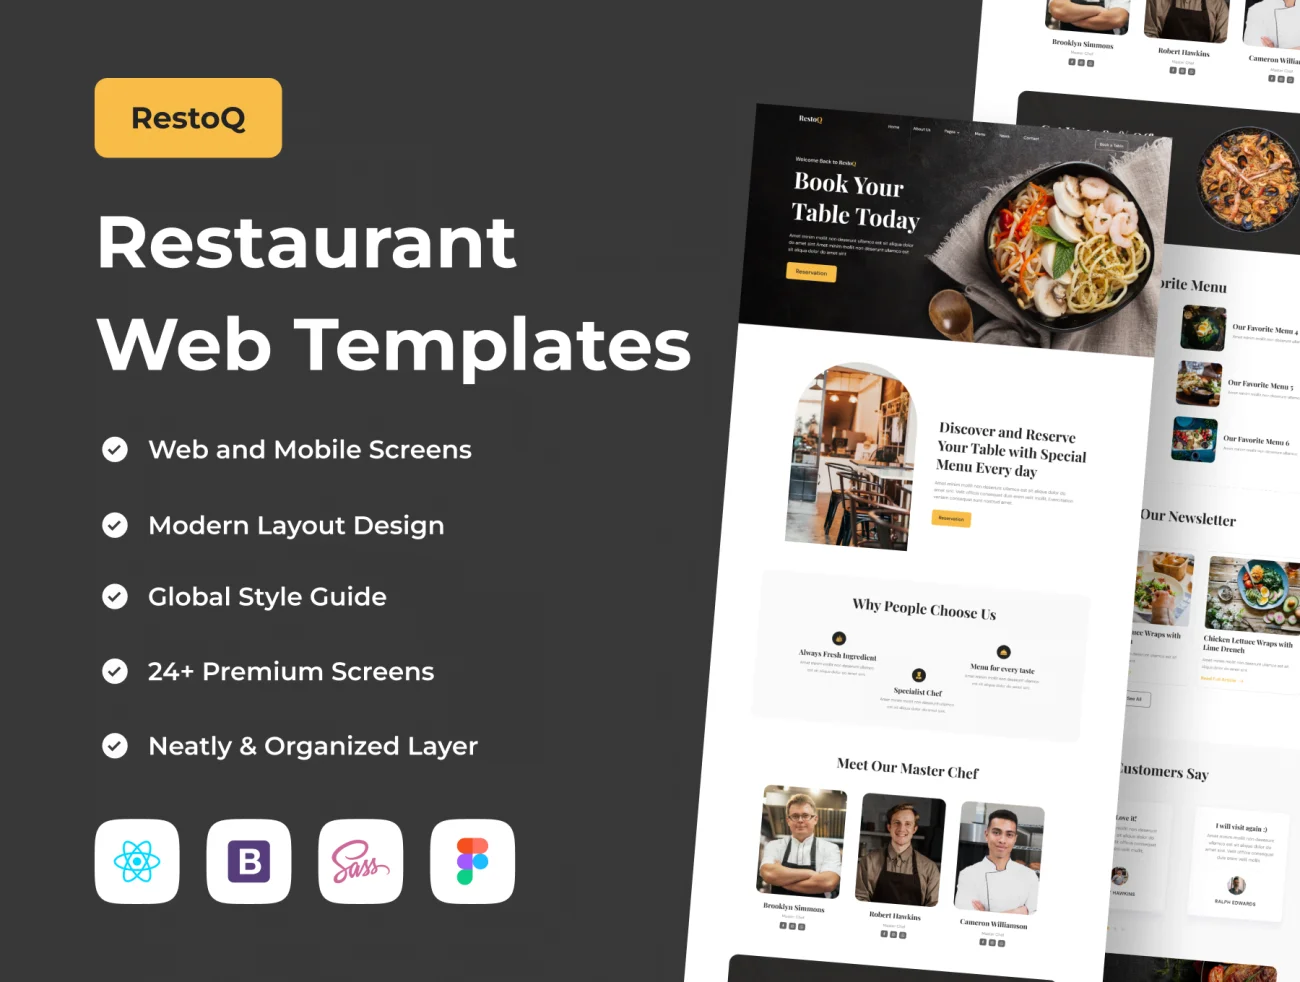 餐厅网站网页模板24屏含源码 RestoQ - Restaurant Web Templates .figma .sass .bootstrap-UI/UX、ui套件、主页、介绍、付款、列表、博客、图表、应用、源码、表单、详情、预订-到位啦UI